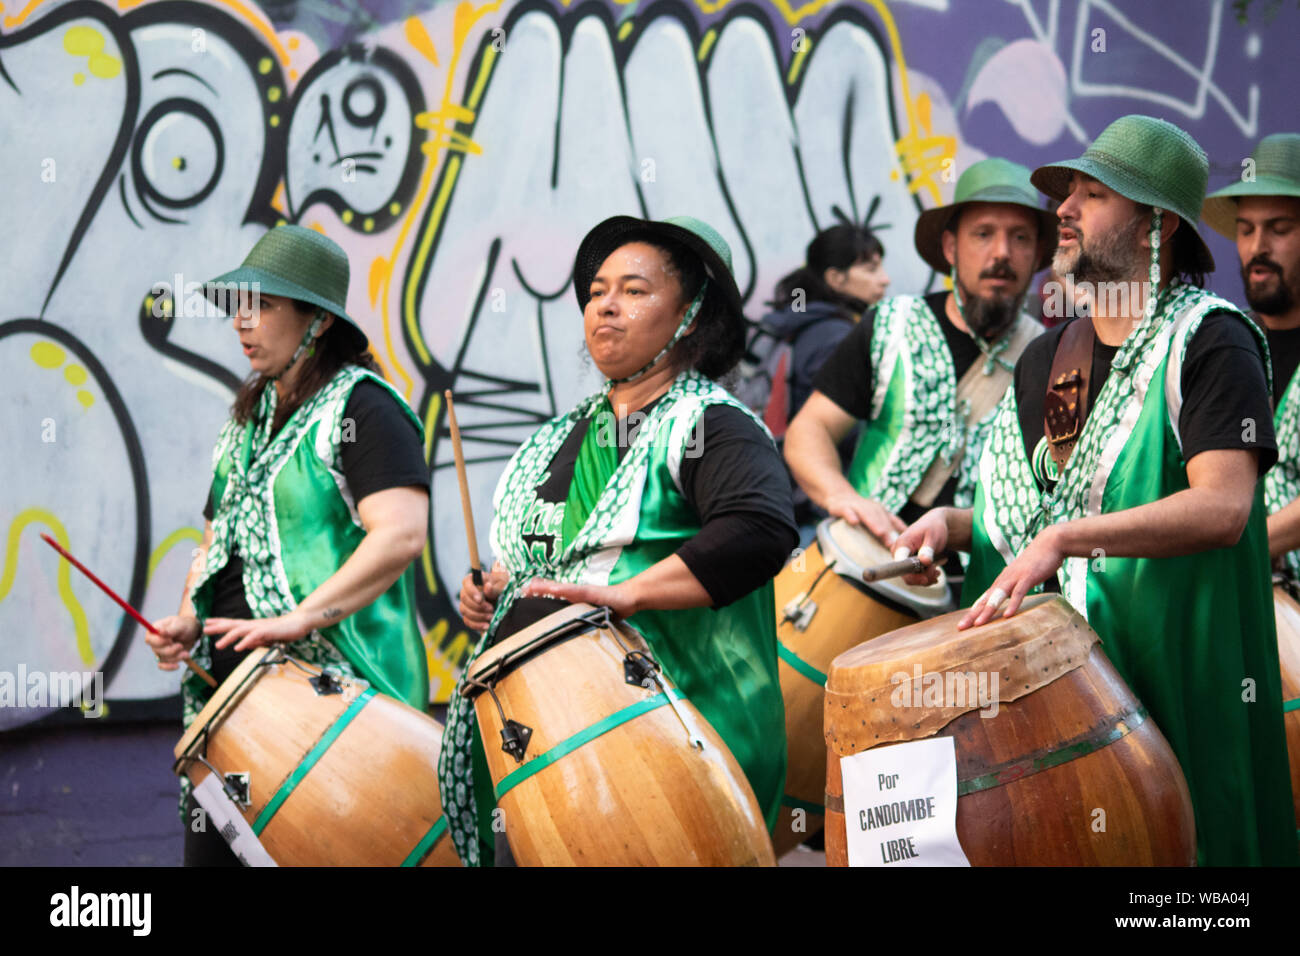 Grupo de personas tocando candombe en el Rio de la Plata Foto Stock